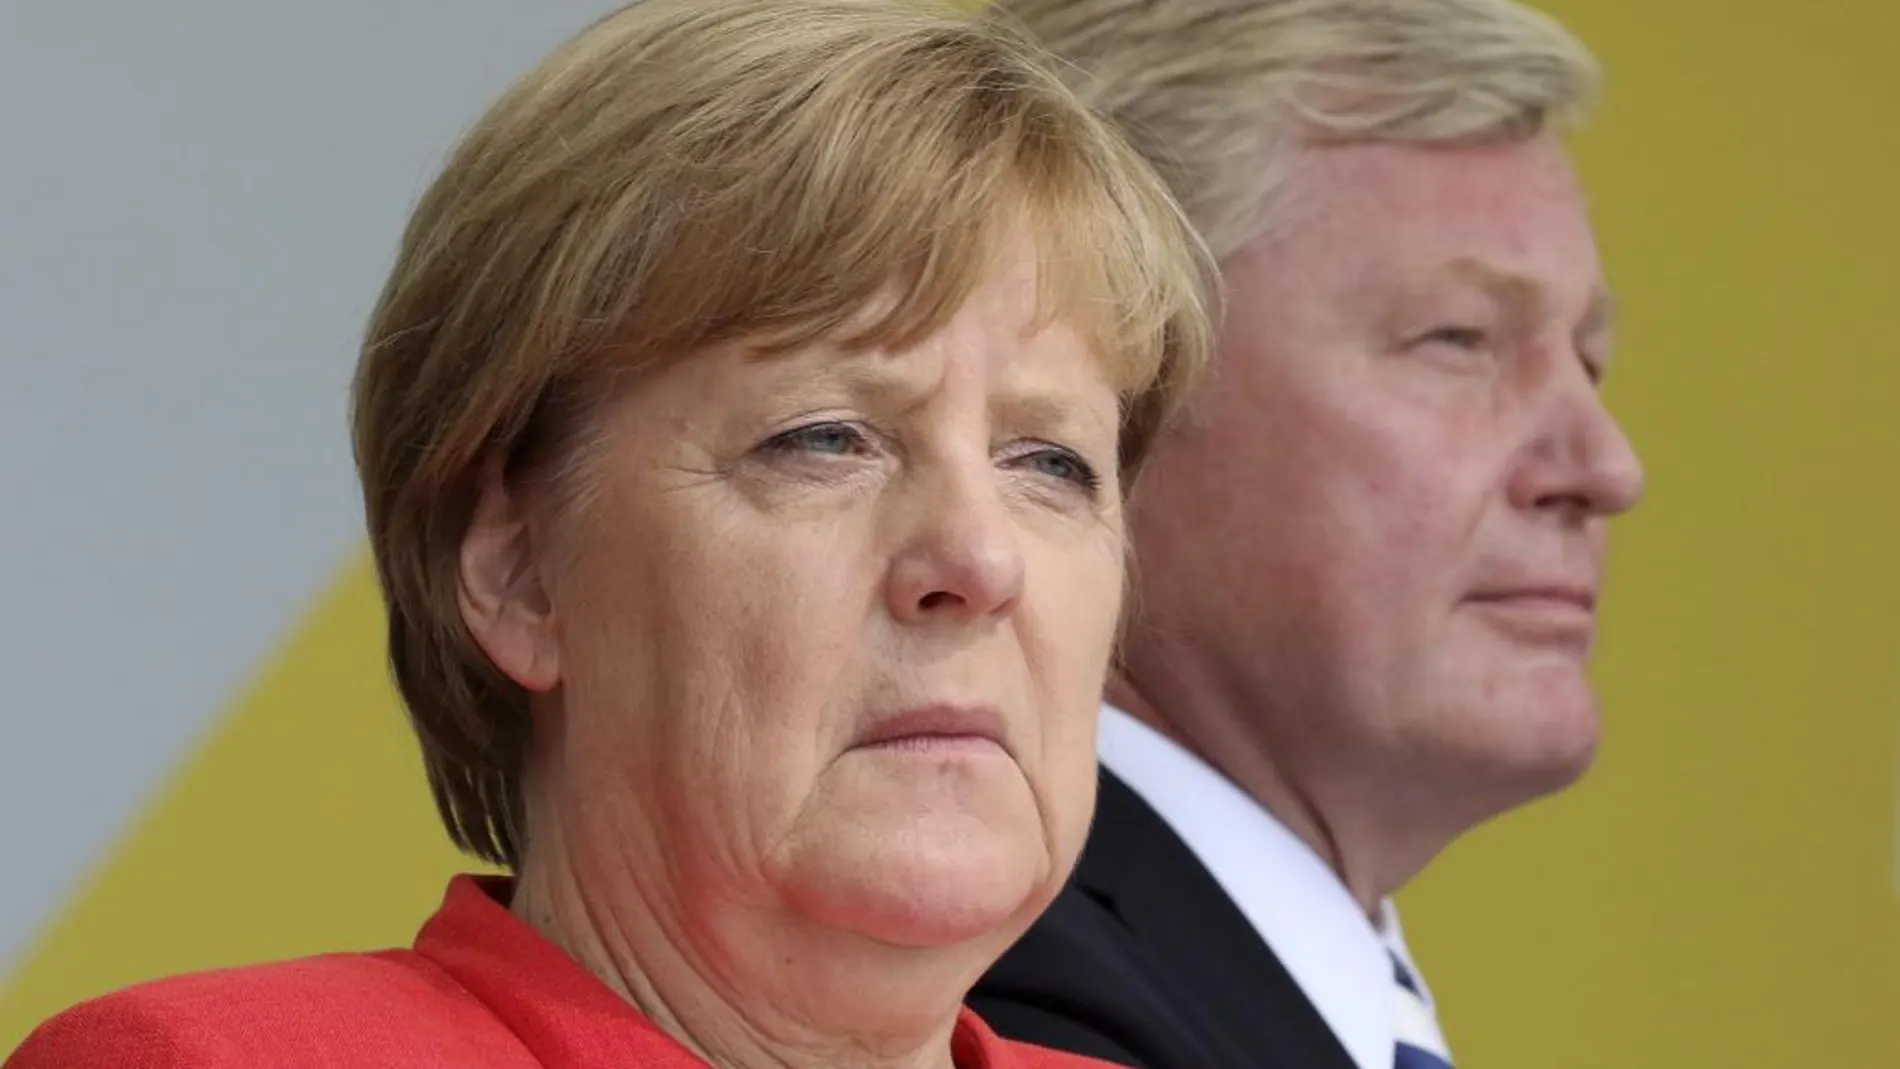 La canciller alemana y presidenta de la Unión Cristianodemócrata (CDU), Angela Merkel, asiste a un acto electoral celebrado en Cuxhaven, Alemania